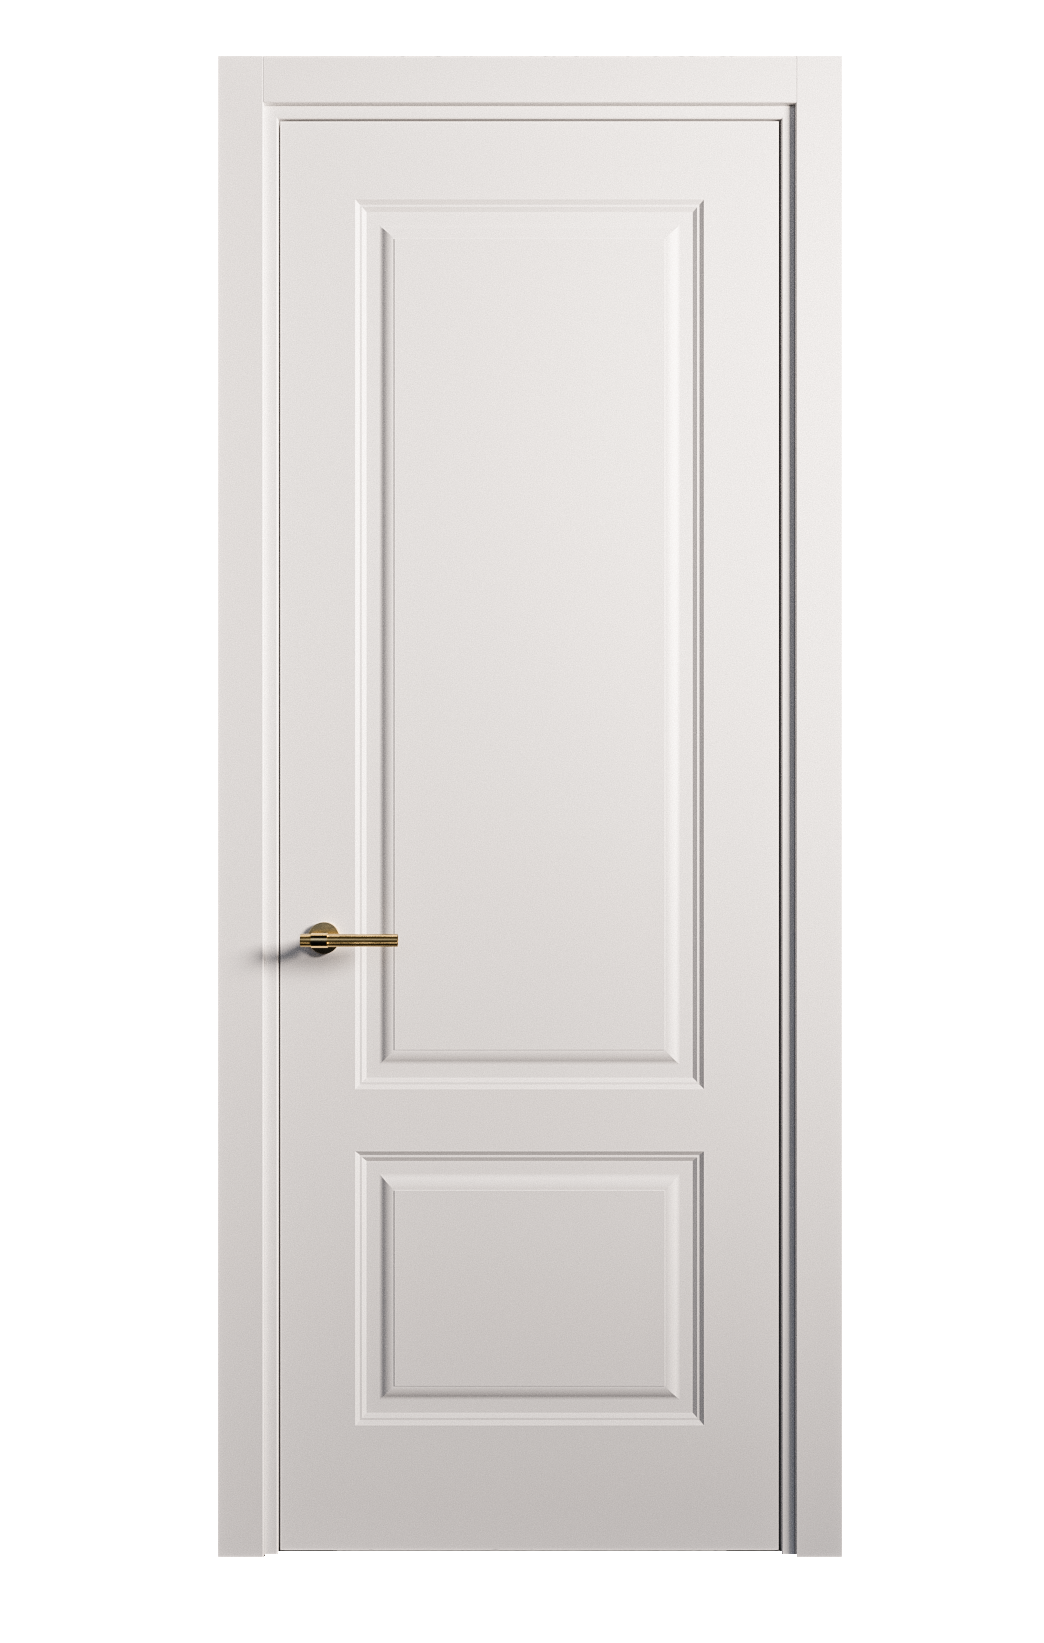 Межкомнатная дверь Вита-1 глухая эмаль ral 9003 26275